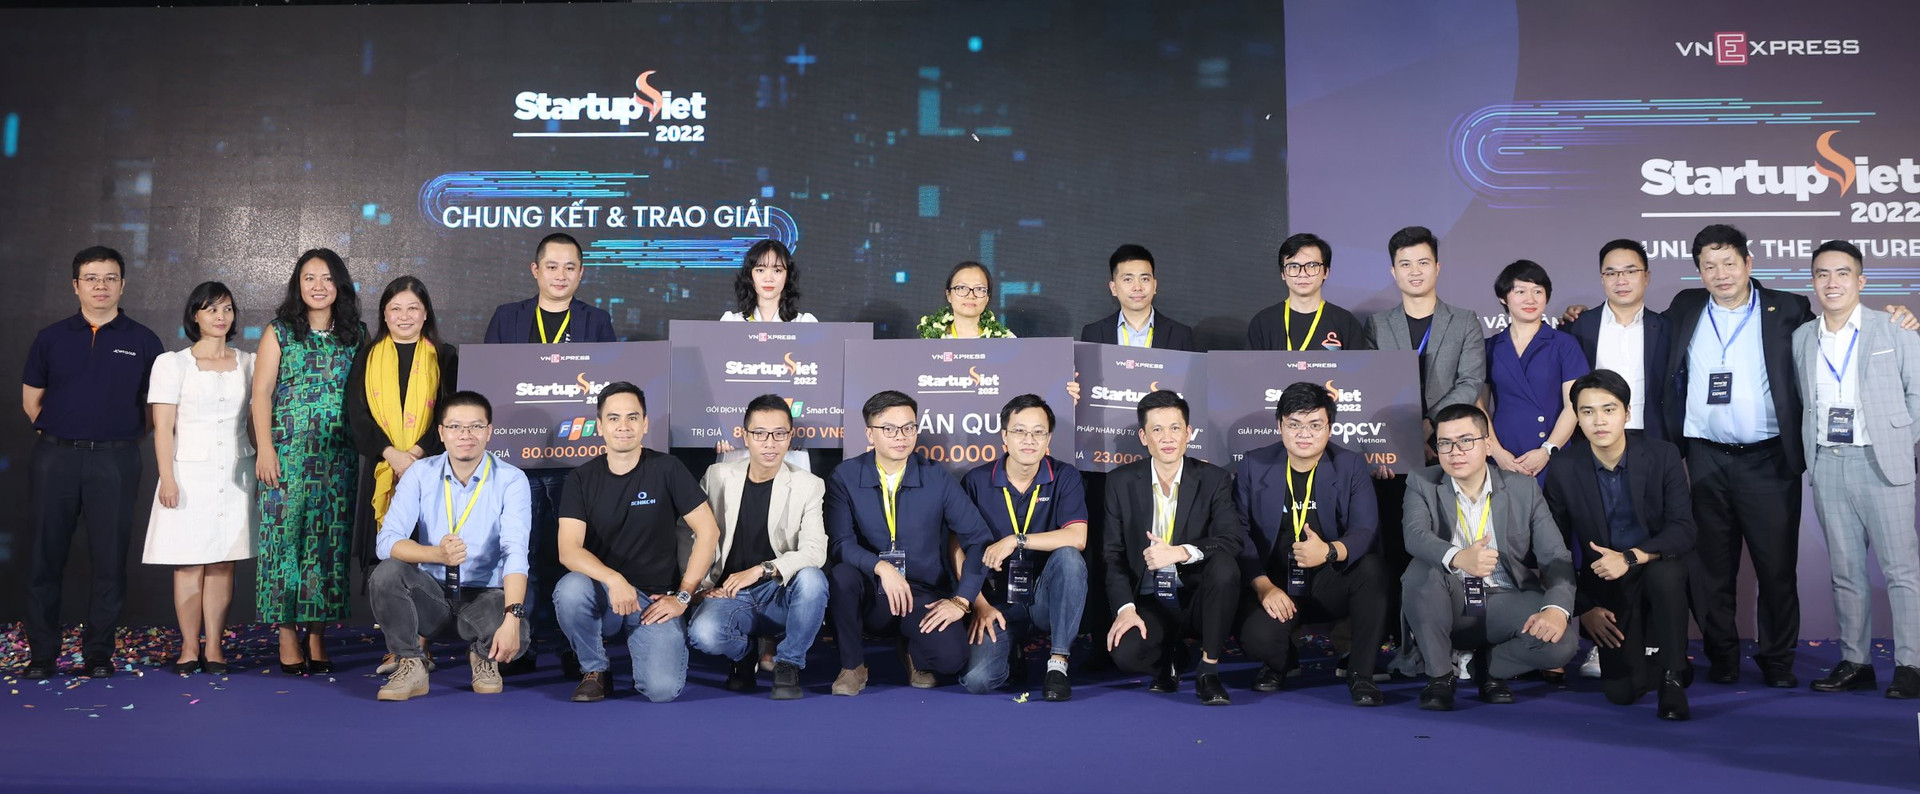 Startup học tiếng Anh qua phim ảnh eJoy lên ngôi quán quân Startup Việt 2022 - Ảnh 2.